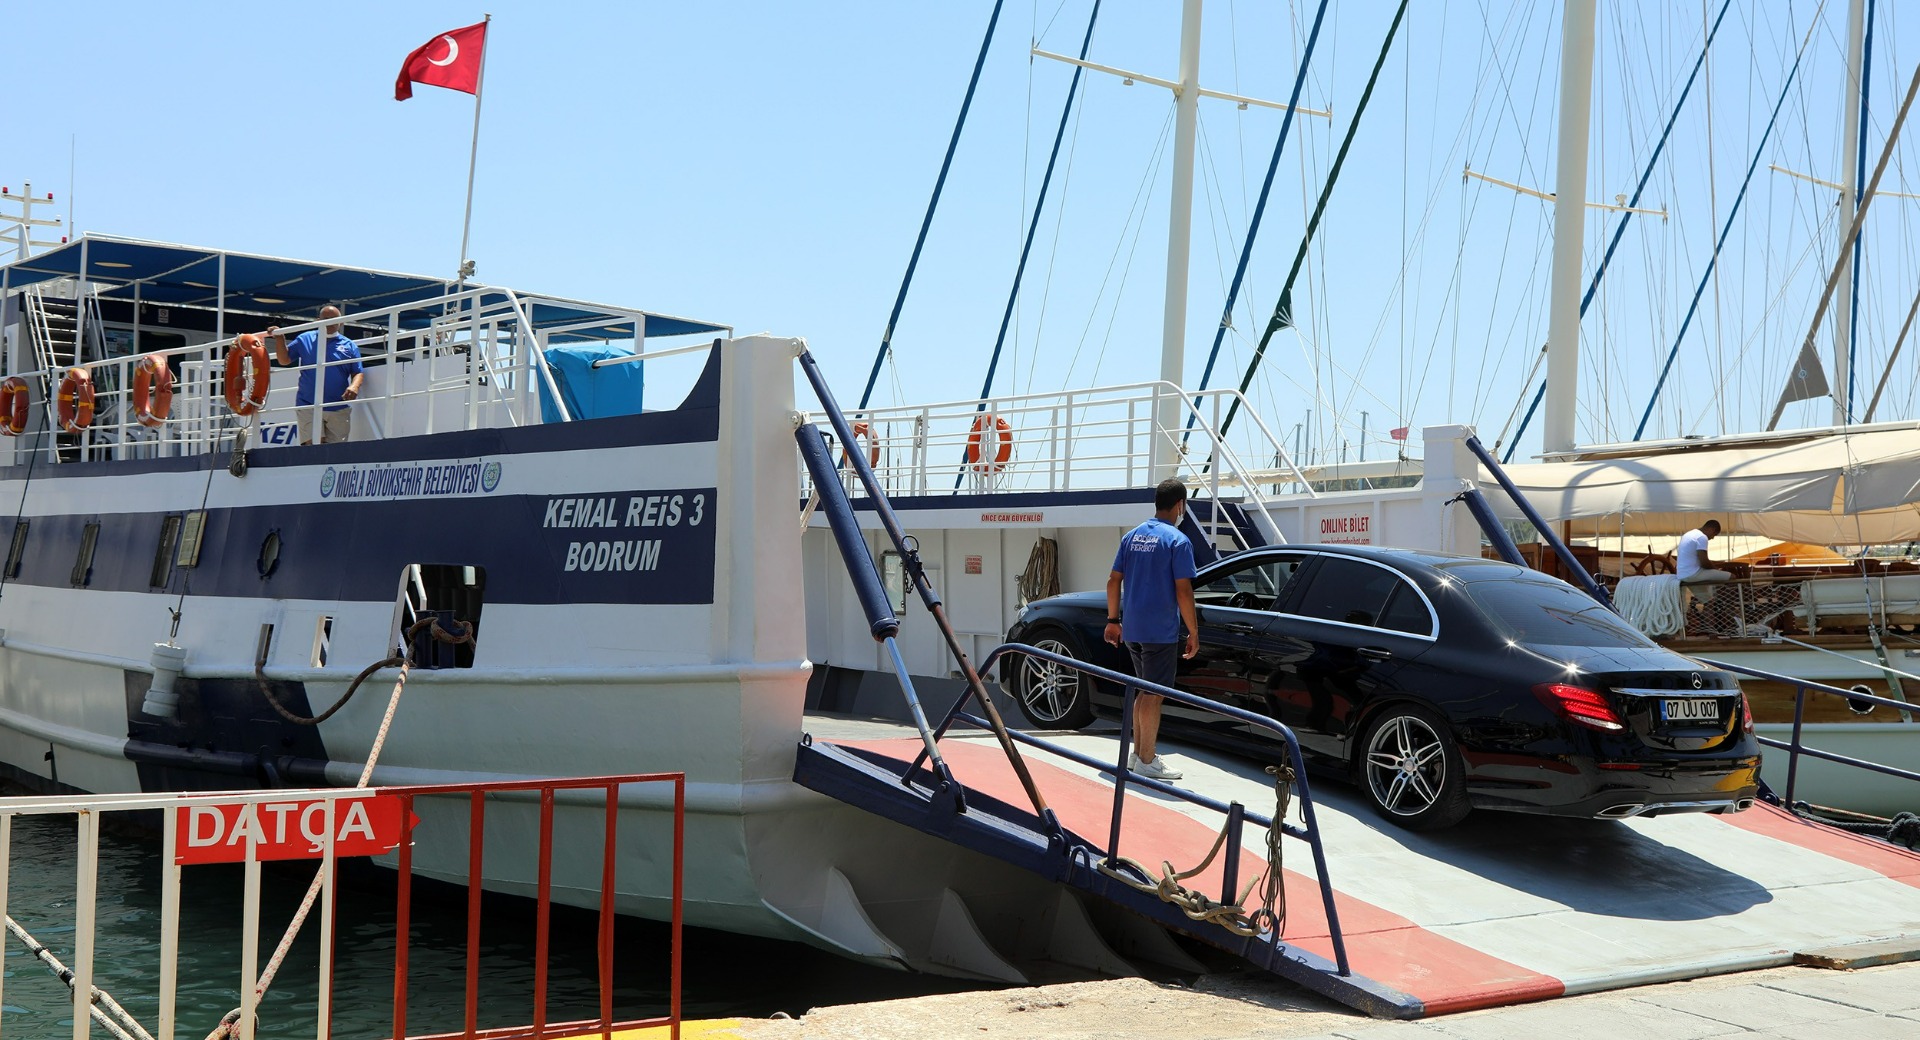 Bodrum-Datça feribot seferi ile 68 bin yolcu taşındı